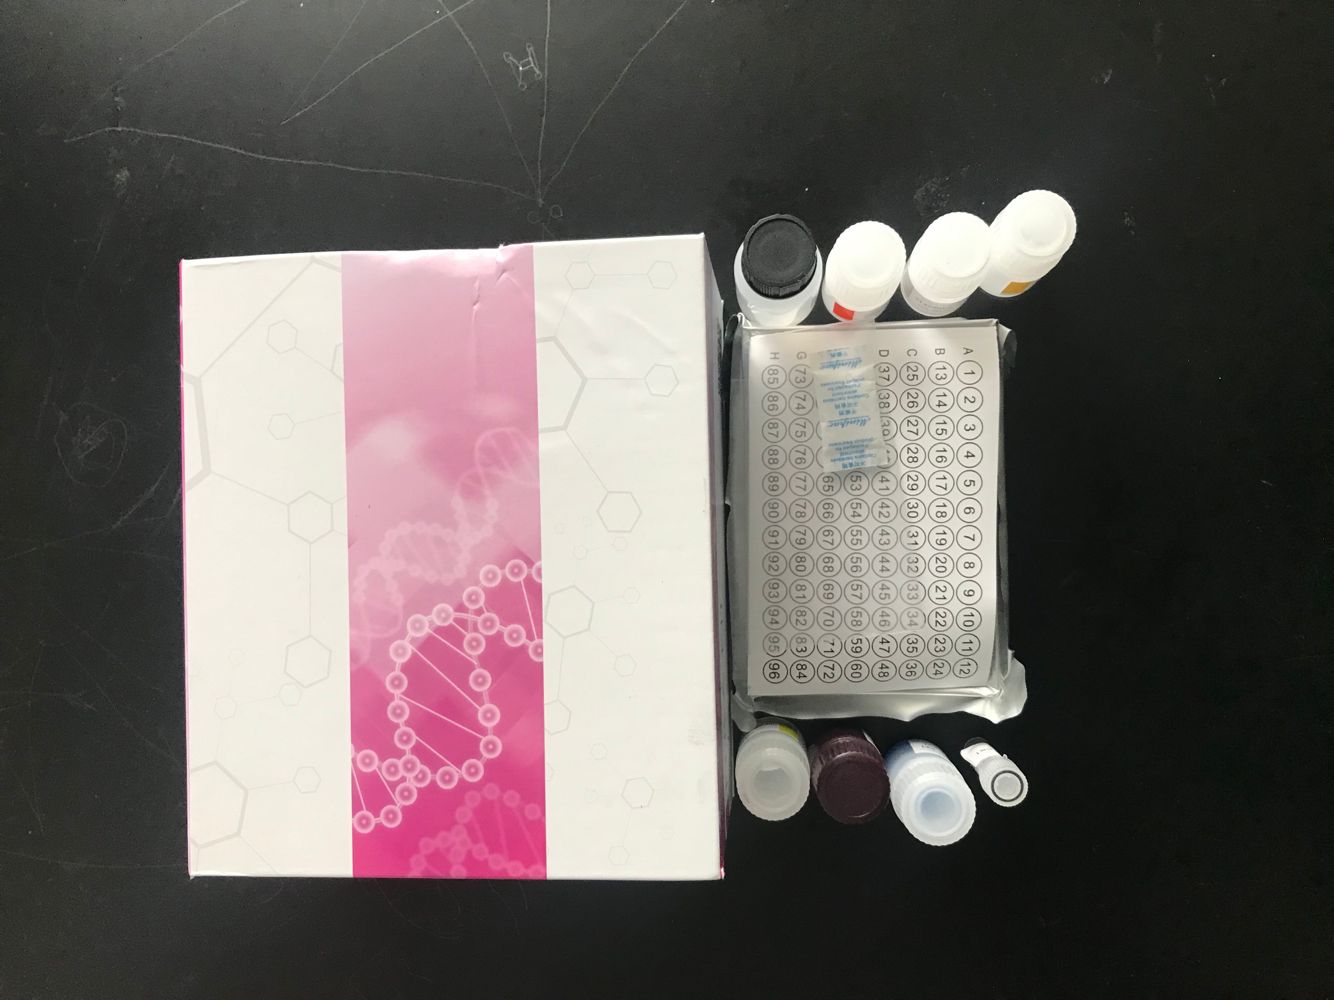 异性脑炎特异性IgM抗体检测试剂盒进口试剂